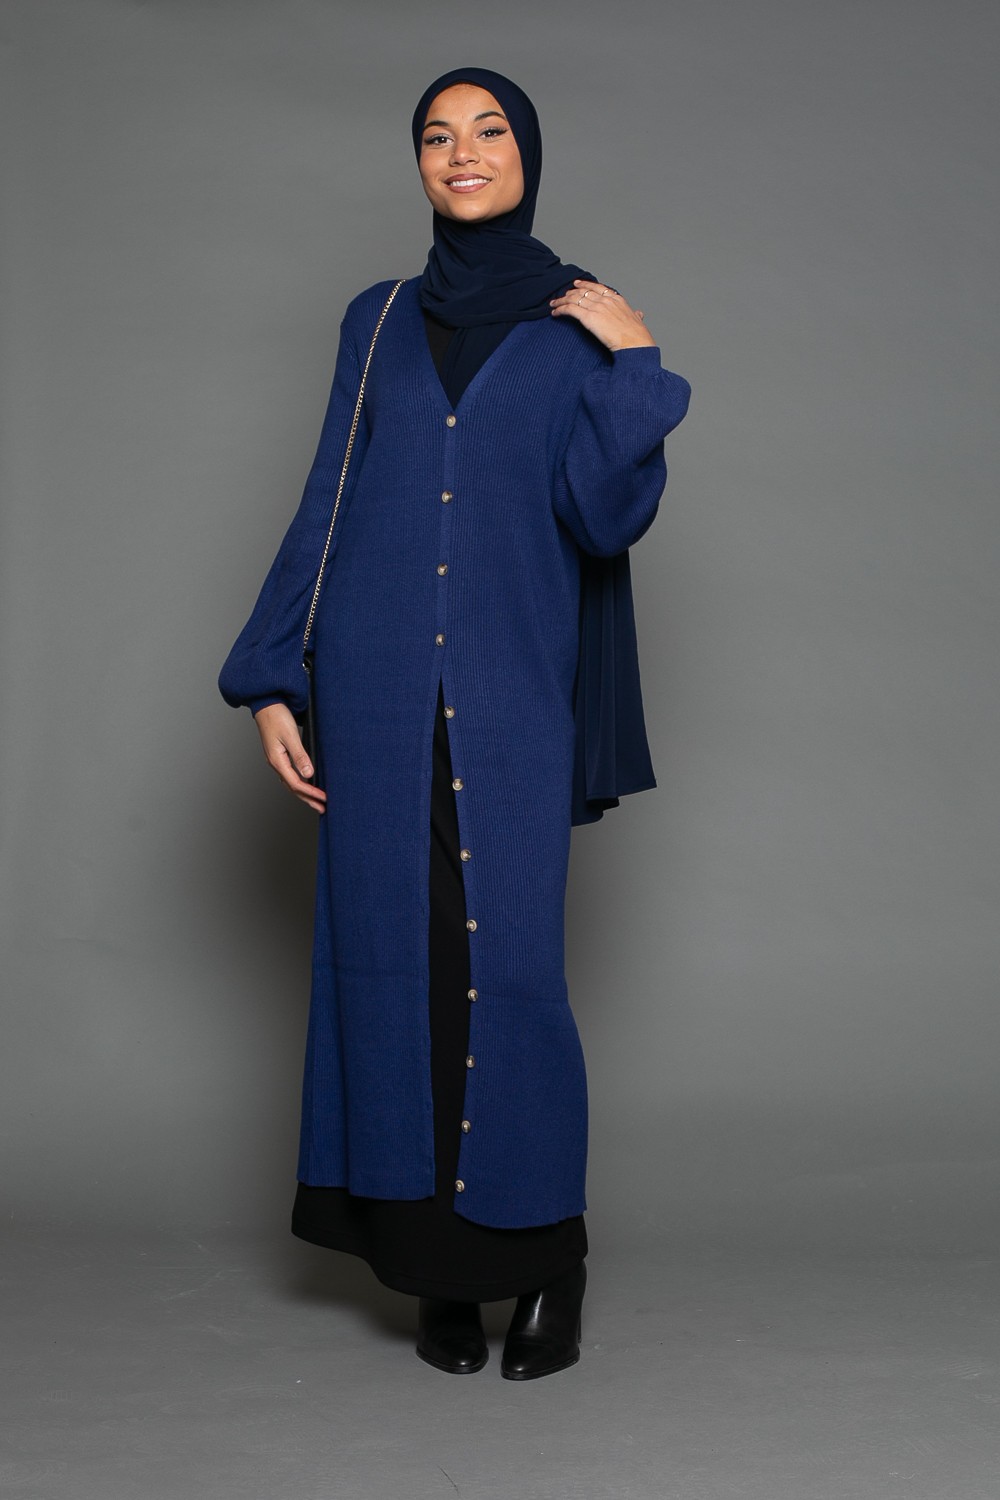 Gilet manche ballon bleu classe et chic pour femme musulmane moderne